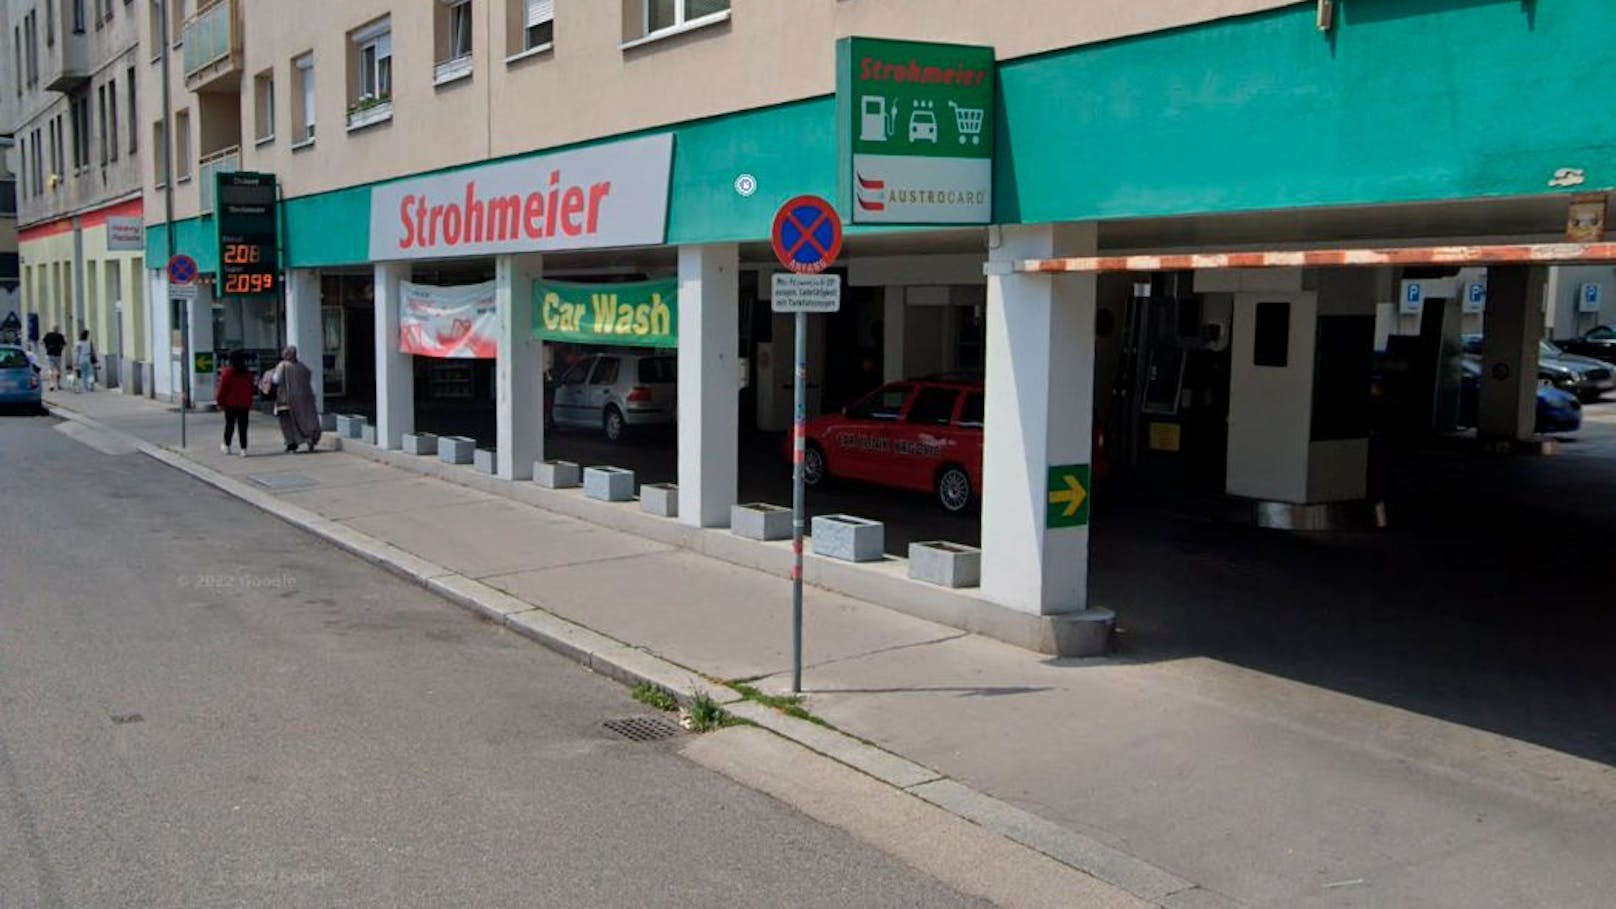 Außenansicht der Diskont-Tankstelle Strohmeier in Wien-Margareten. (Preistafel nicht aktuell)